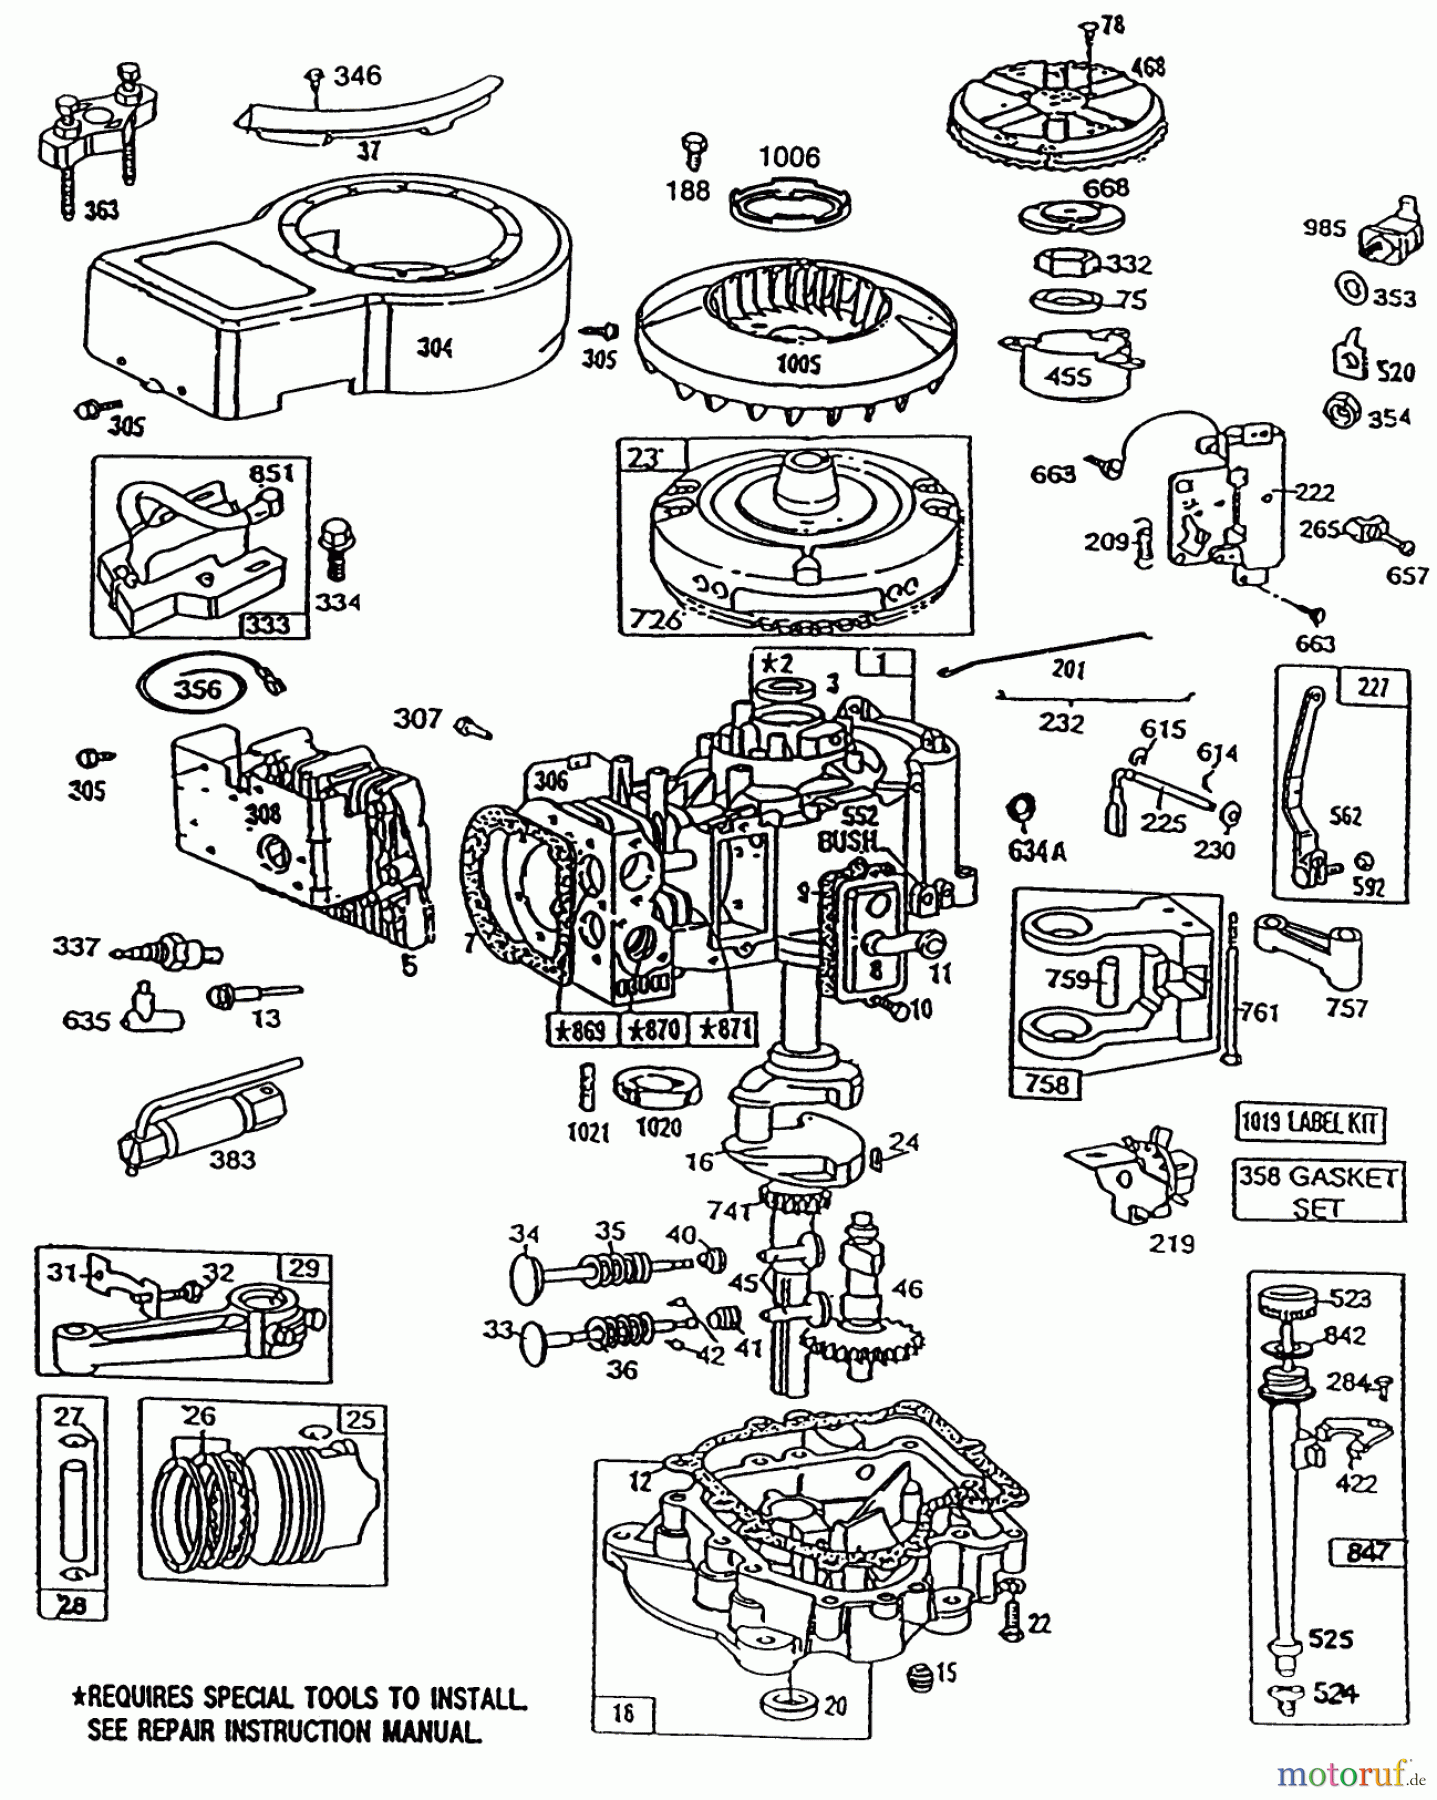  Toro Neu Mowers, Lawn & Garden Tractor Seite 1 32-1205A1 (212-5) - Toro 212-5 Tractor, 1991 (1000001-1999999) ENGINE BRIGGS AND STRATTON MODEL 281707-0226-01 #1